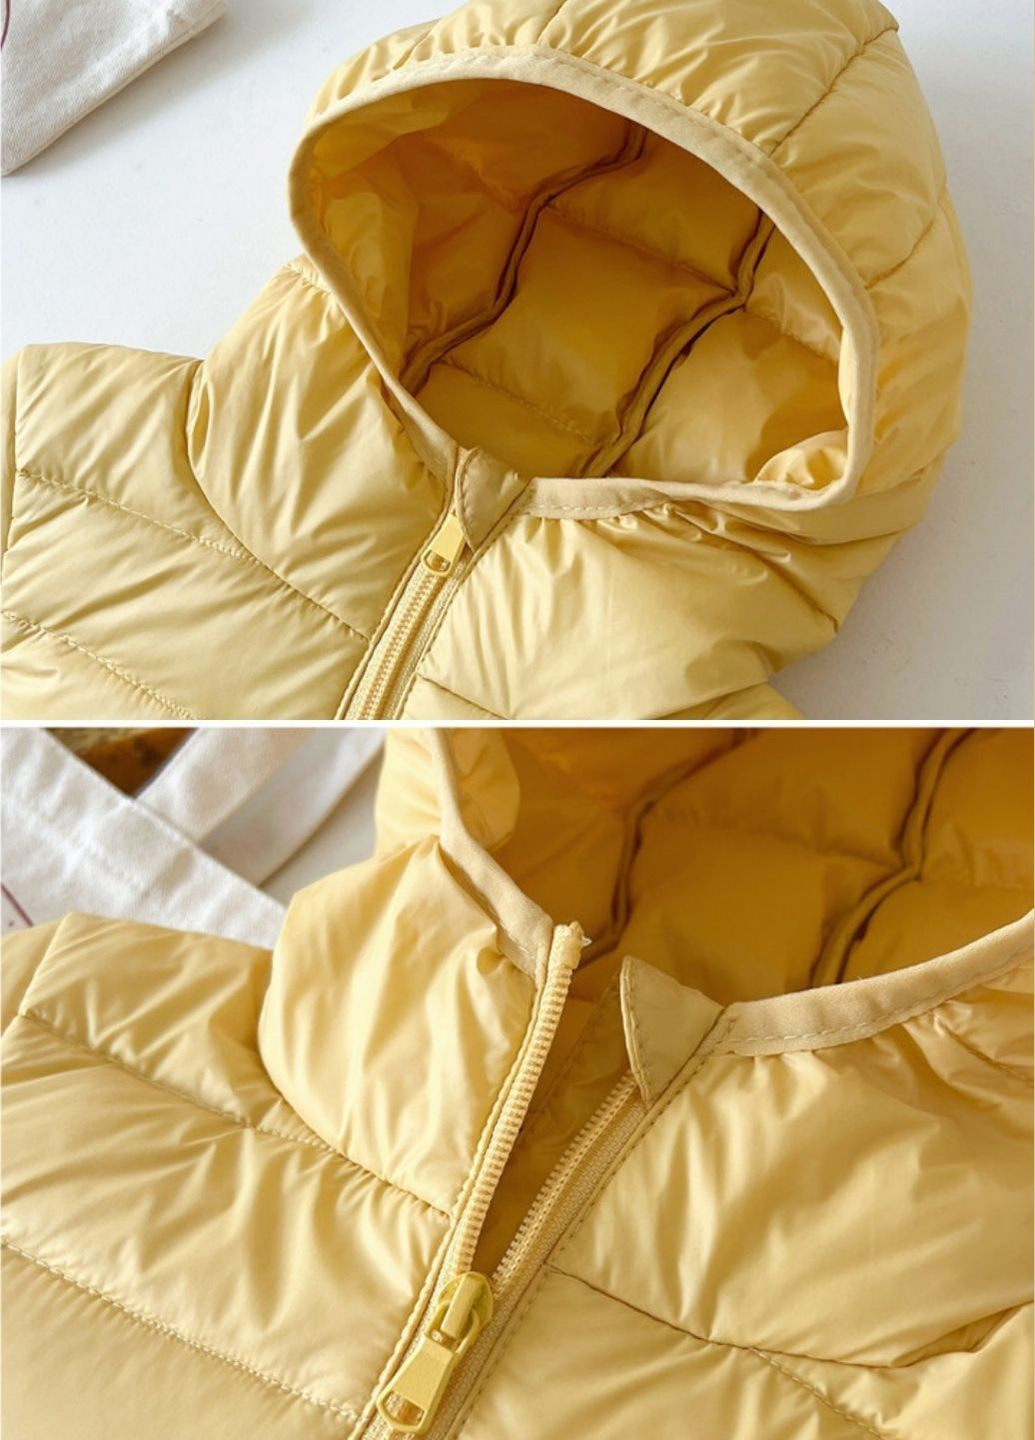 Желтая демисезонная куртка демисезонная детская No Brand